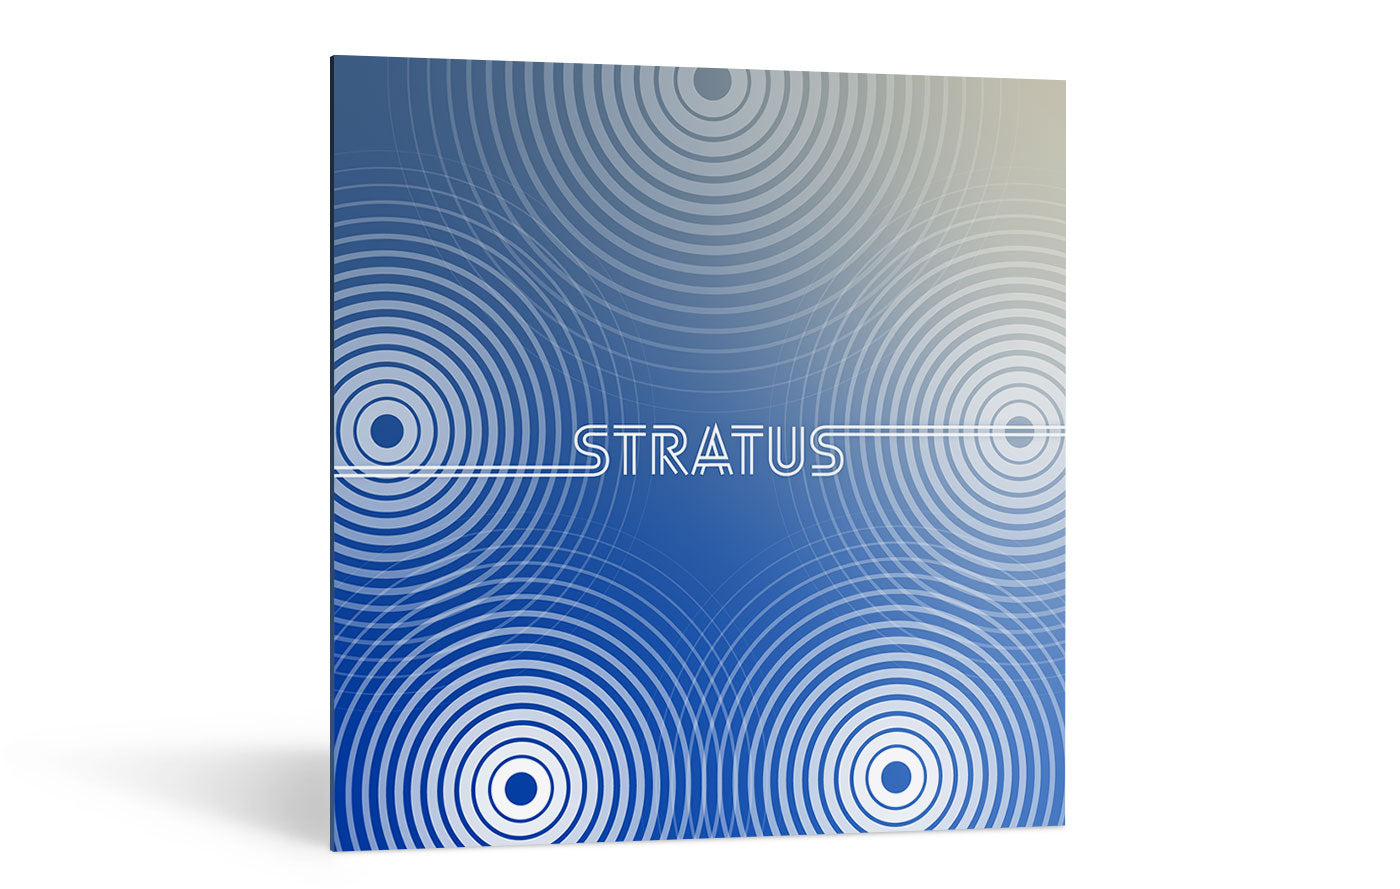 iZotope | Exponential Audio: Stratus